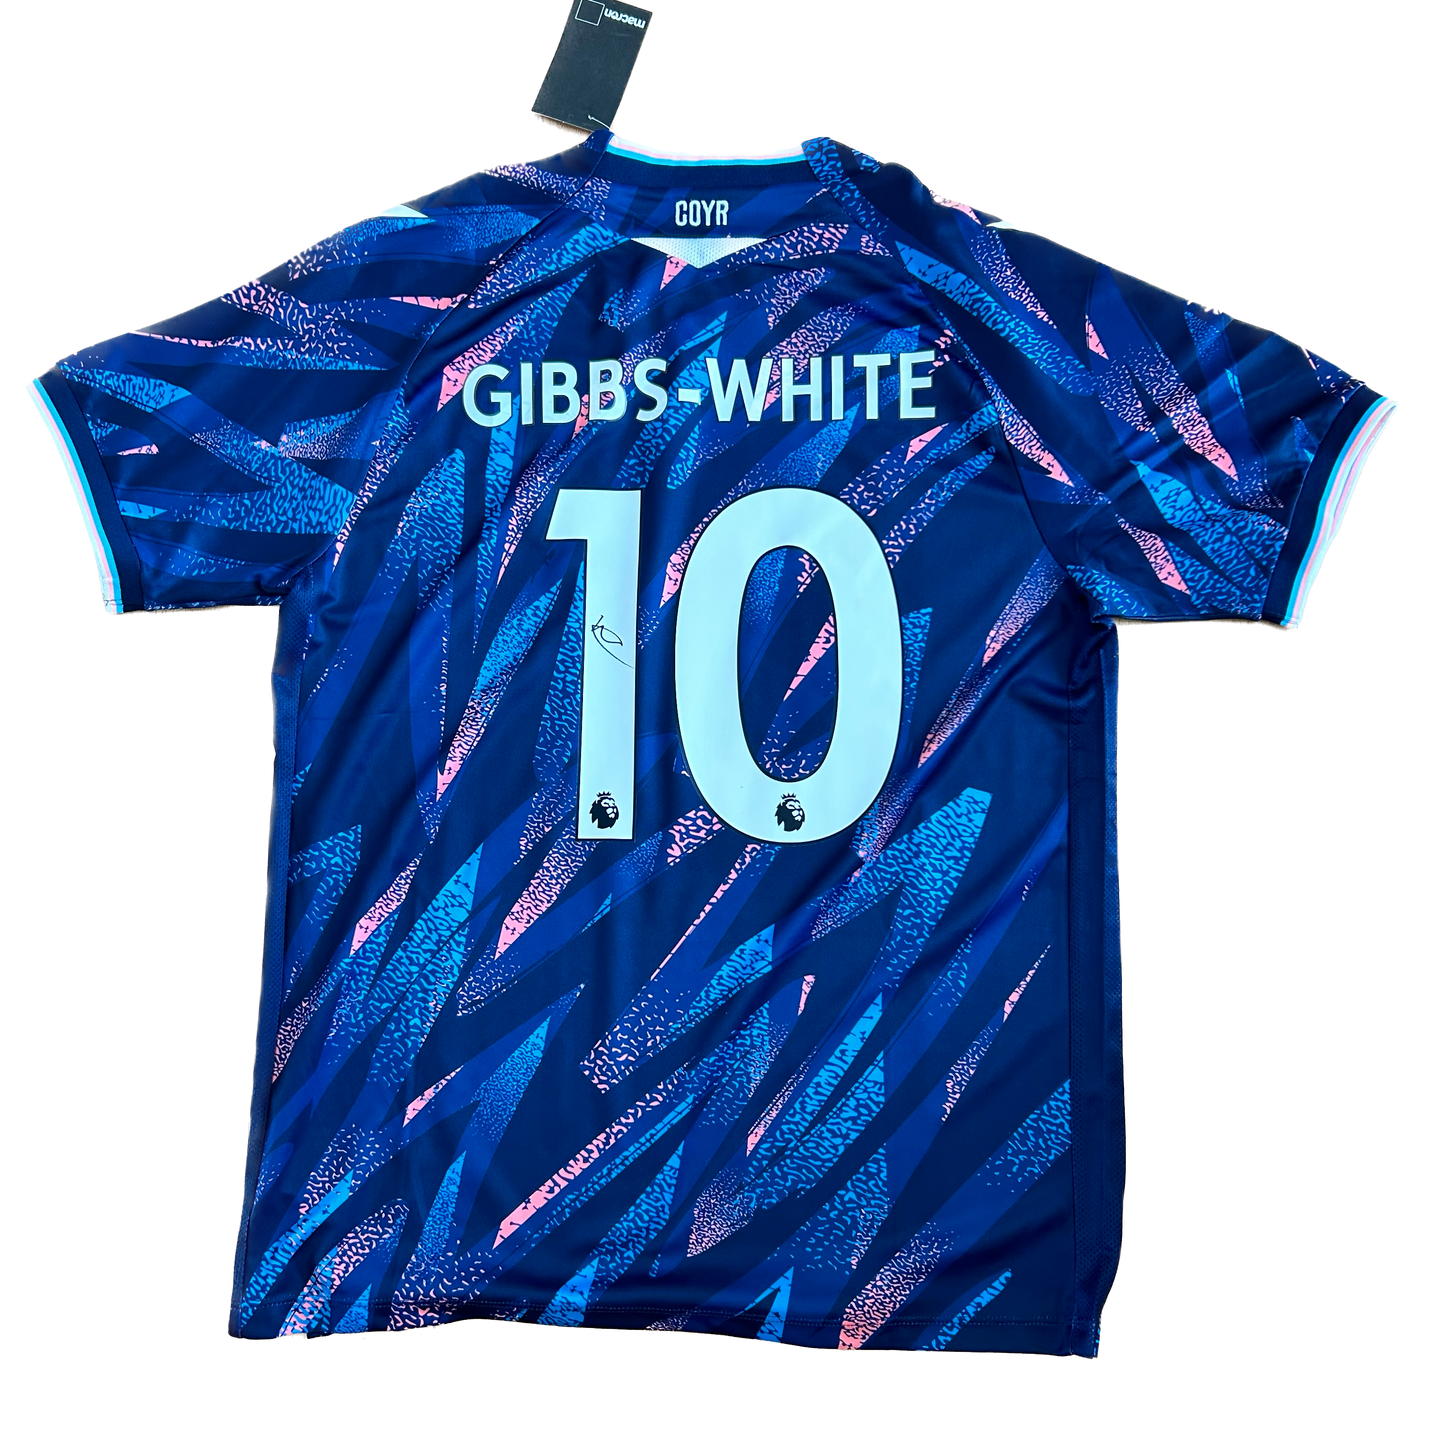 Signed Morgan Gibbs-White Nottingham Forest Third Shirt 22/23